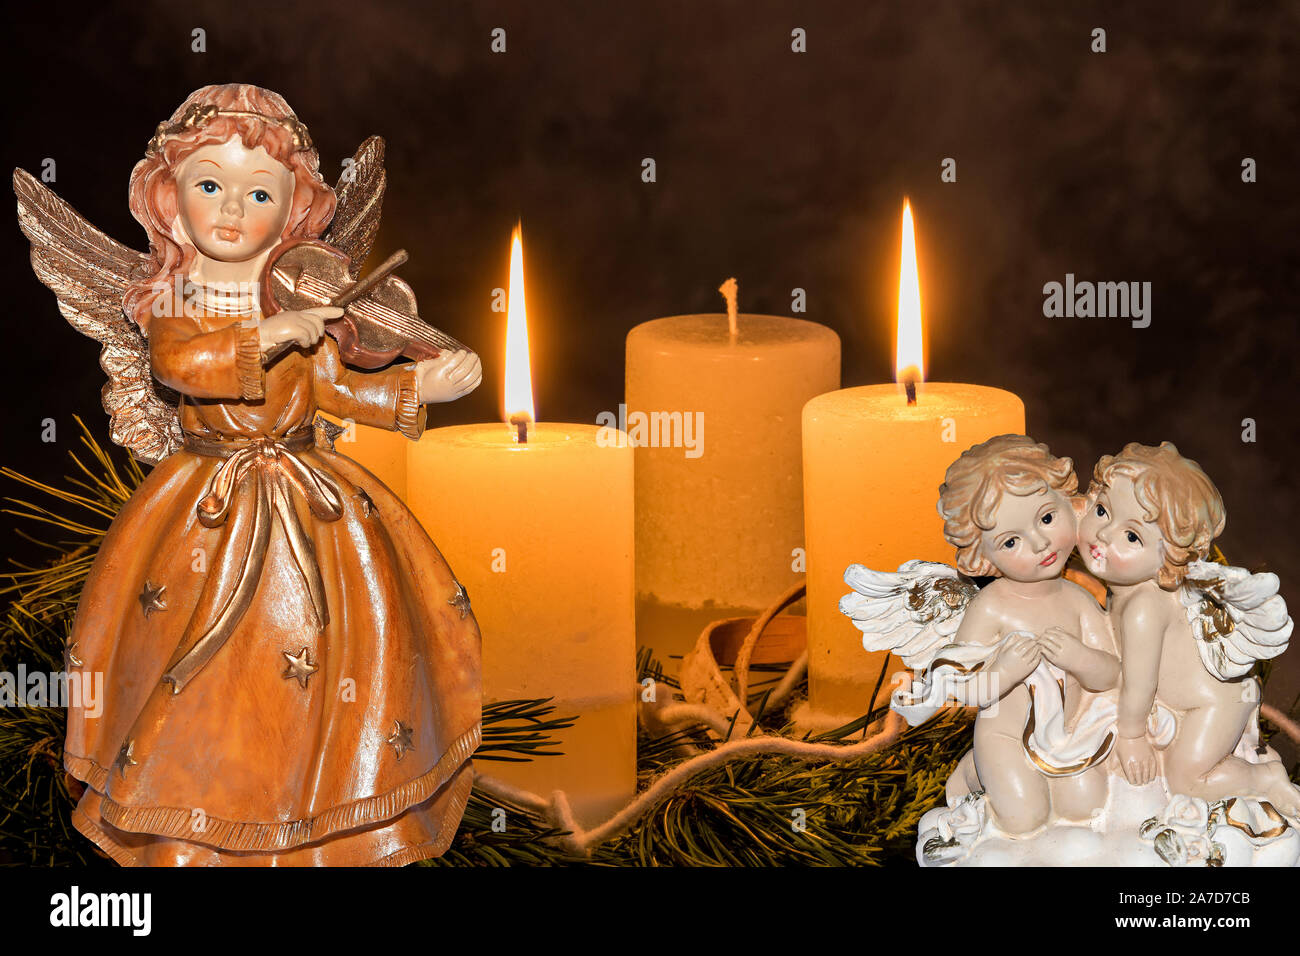 Ein Adventskranz zu Weihnachten sorgt für romatinsche Stimmung in der  stillen Advent Zeit, 2. Advent, drei brennende Kerzen, Engel,  weihnachtsengel Stock Photo - Alamy